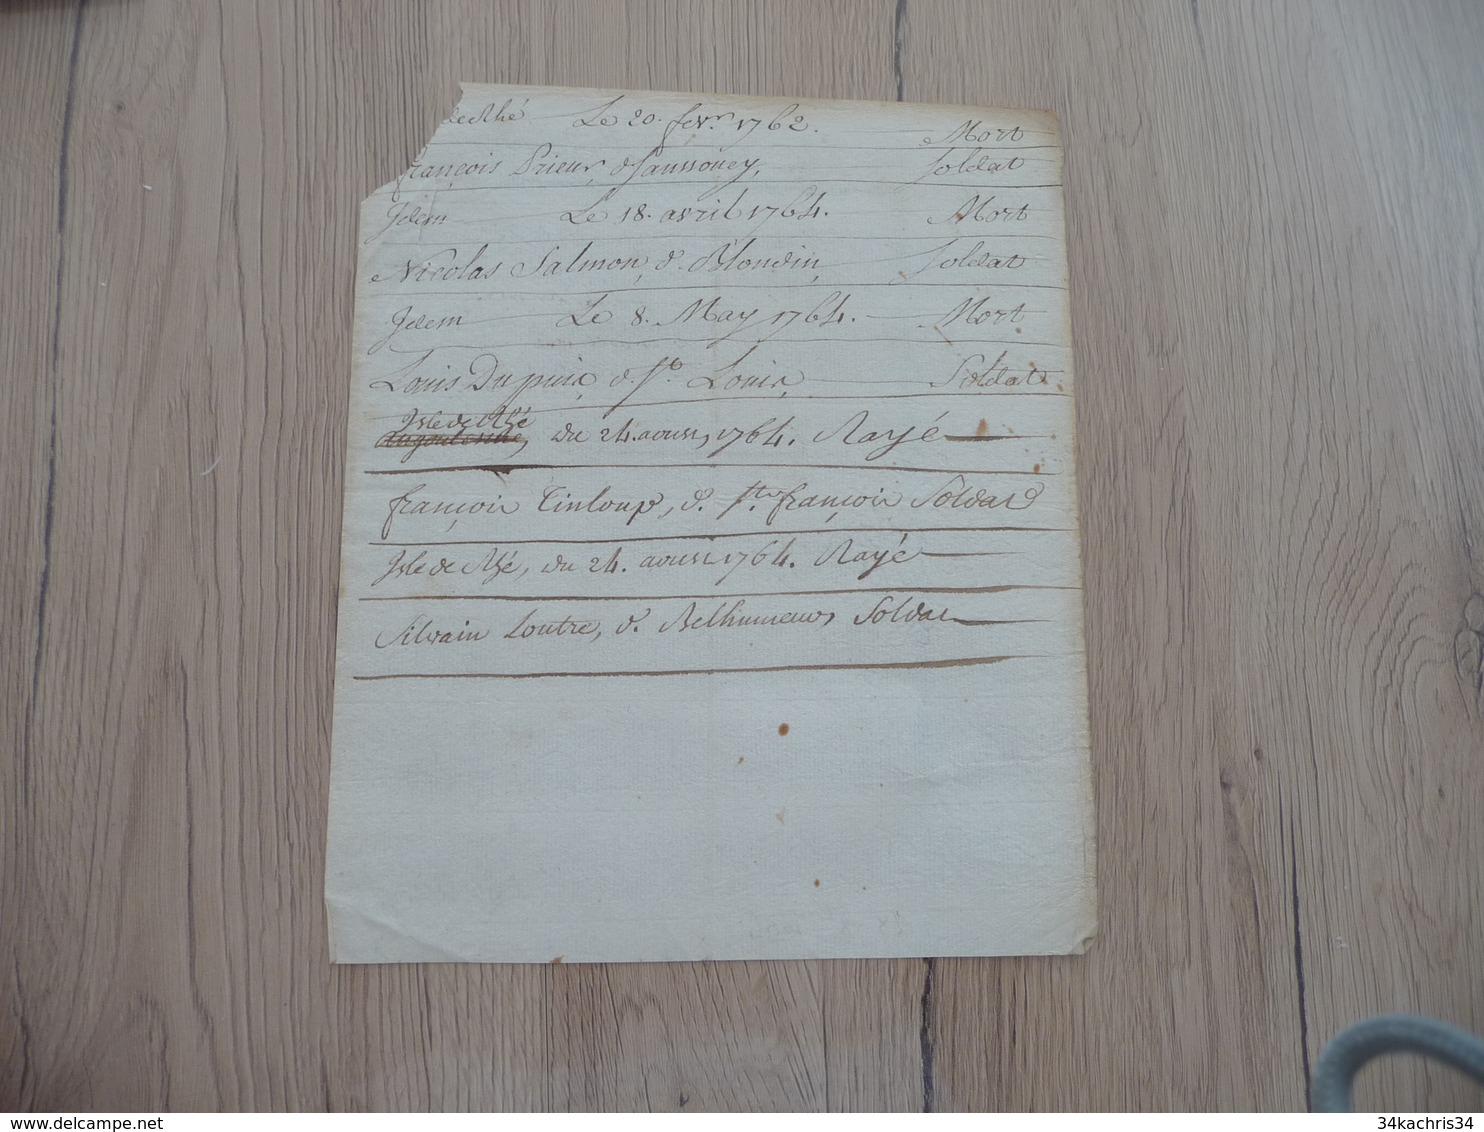 Pièce Signée Autographe Keyrsen Compagnie De Saint Marcel 1764 Liste Morts De Soldats - Documentos